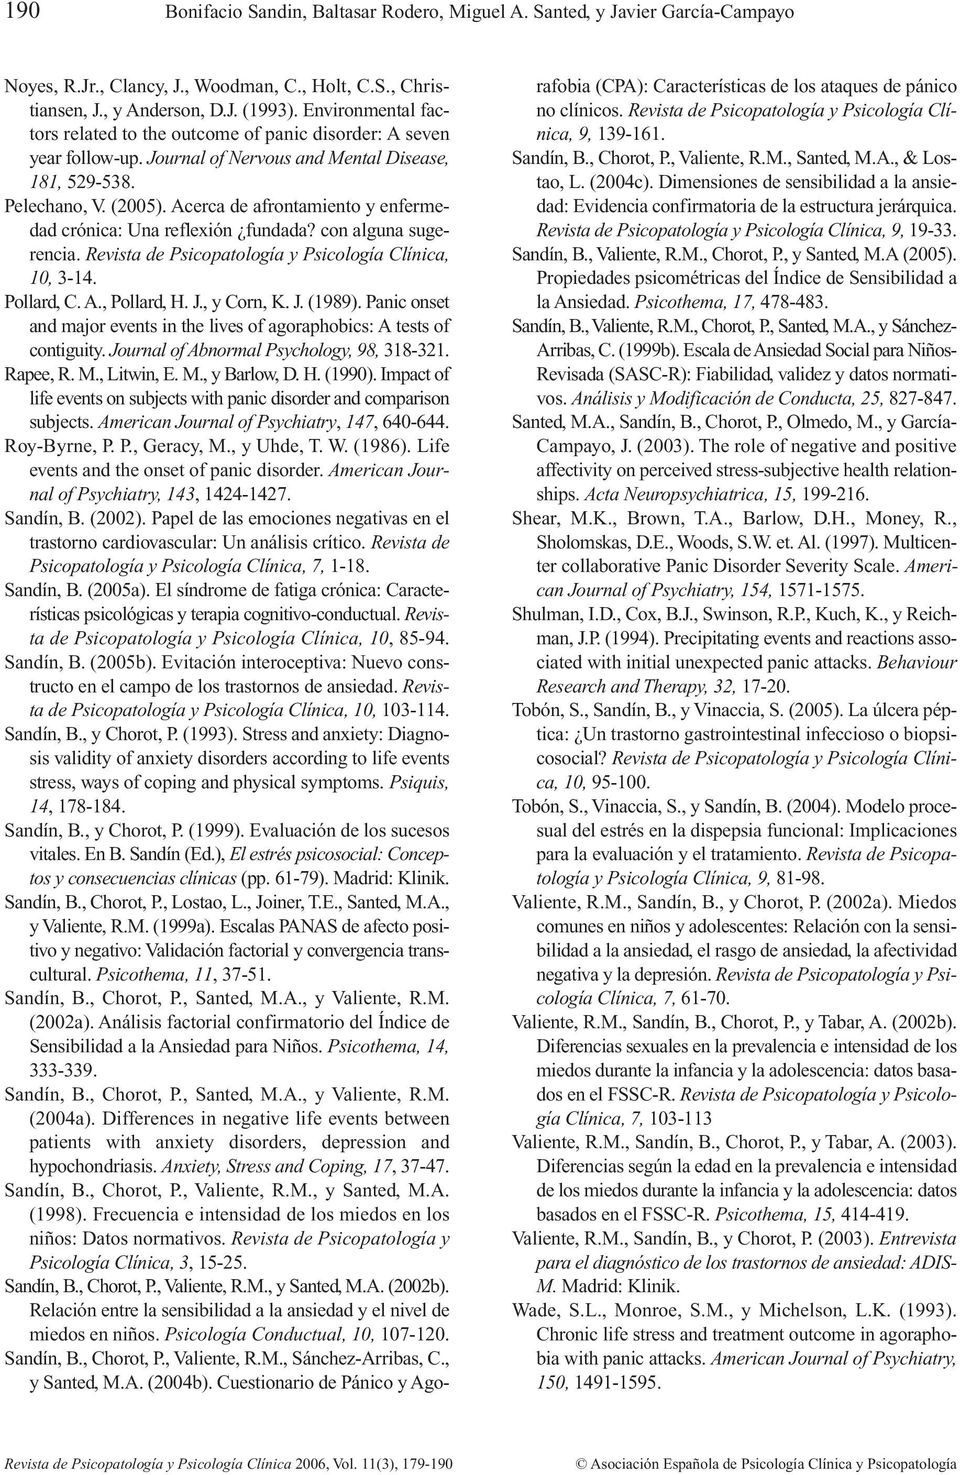 Acerca de afrontamiento y enfermedad crónica: Una reflexión fundada? con alguna sugerencia. Revista de Psicopatología y Psicología Clínica, 10, 3-14. Pollard, C. A., Pollard, H. J., y Corn, K. J. (1989).